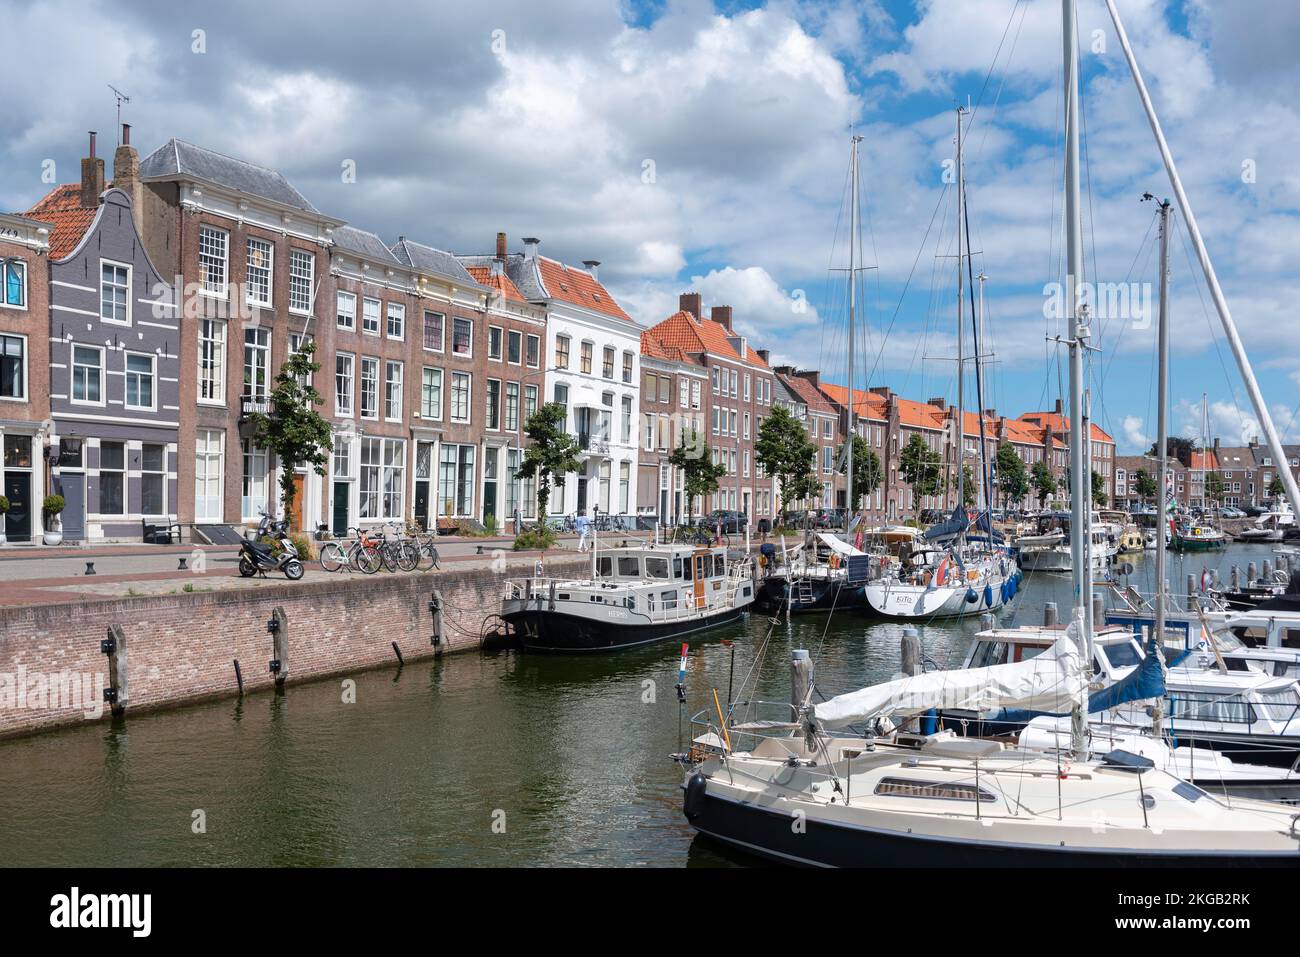 Stadtbild mit Yachthafen in Rouaansekaai, Middelburg, Zeeland, Niederlande Stockfoto